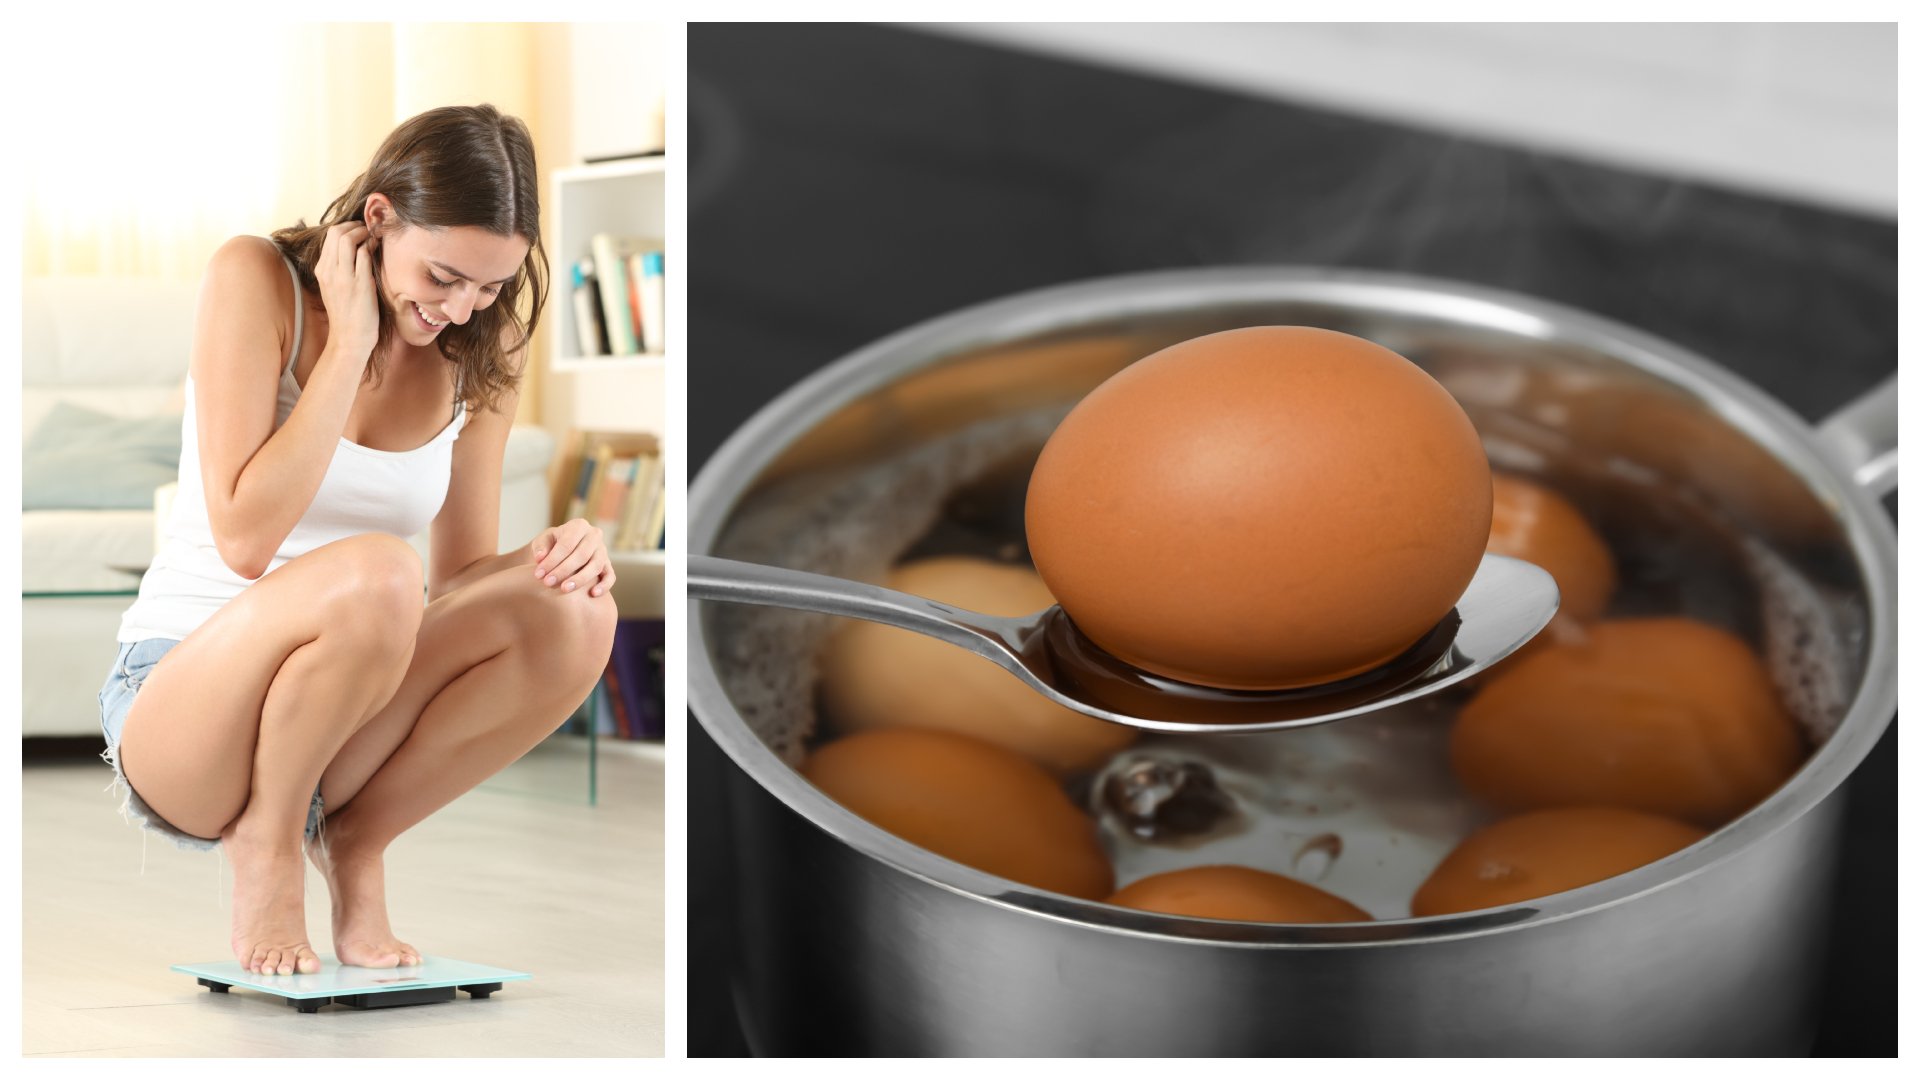 Kiaušinių iššūkyje dalyvavusi mergina džiaugėsi per 5 dienas atsikračiusi 4 kg: specialistai įspėja – tai „žaidimas“ su sveikata